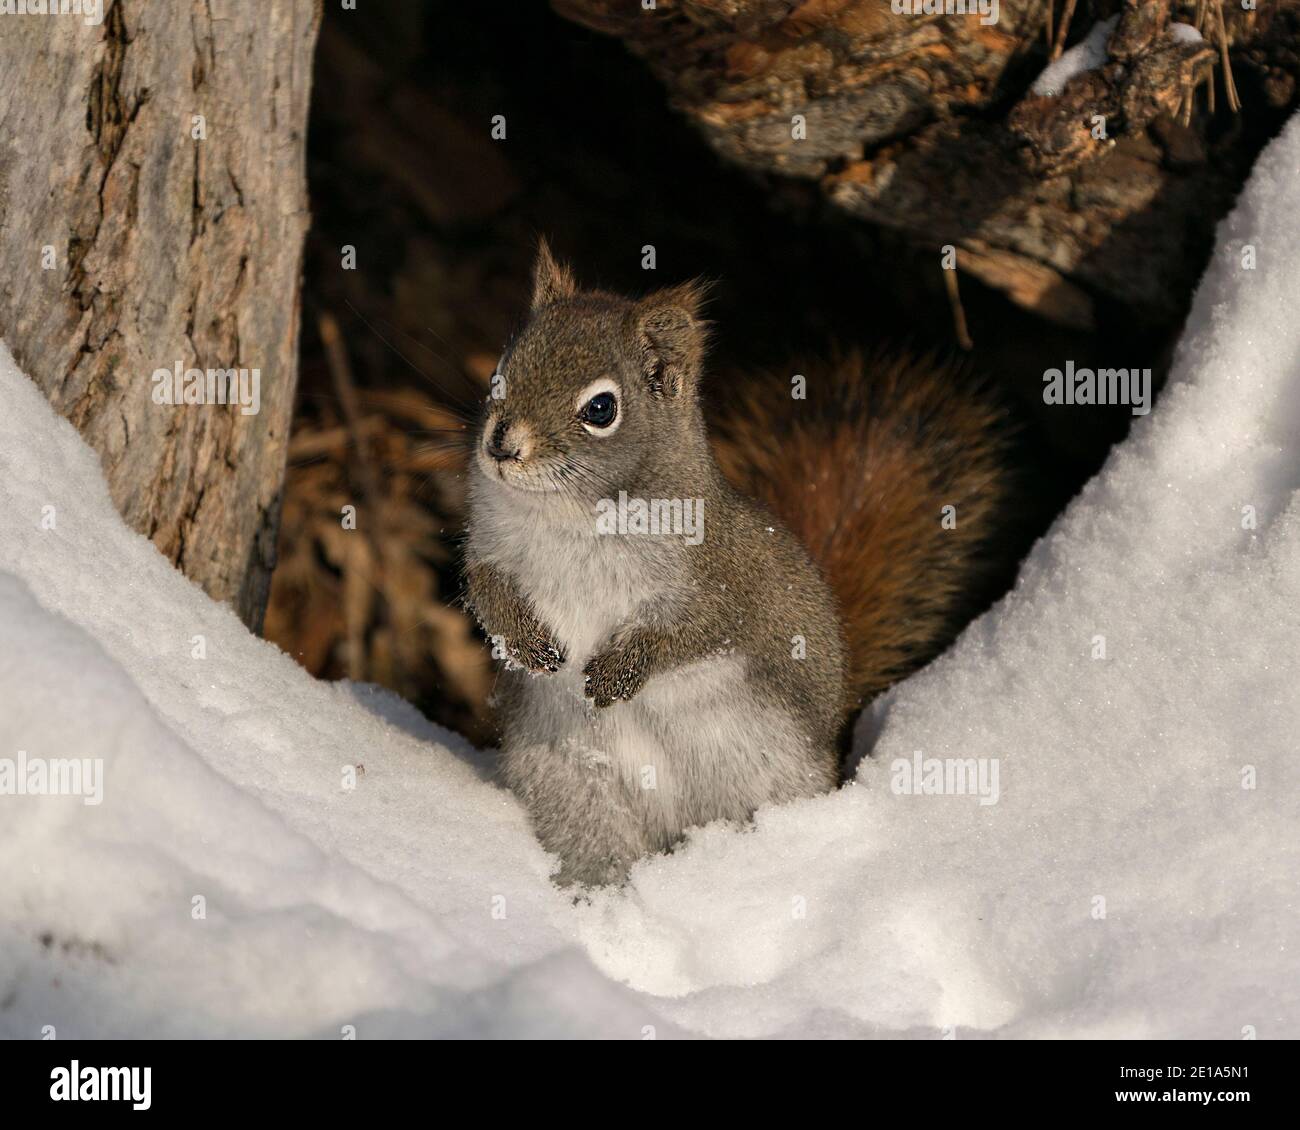 Eichhörnchen Nahaufnahme Profil Ansicht im Wald, sitzt im Schnee mit Höhle Eingang Hintergrund, zeigt seine braunen Fell, in seinem Lebensraum. Stockfoto